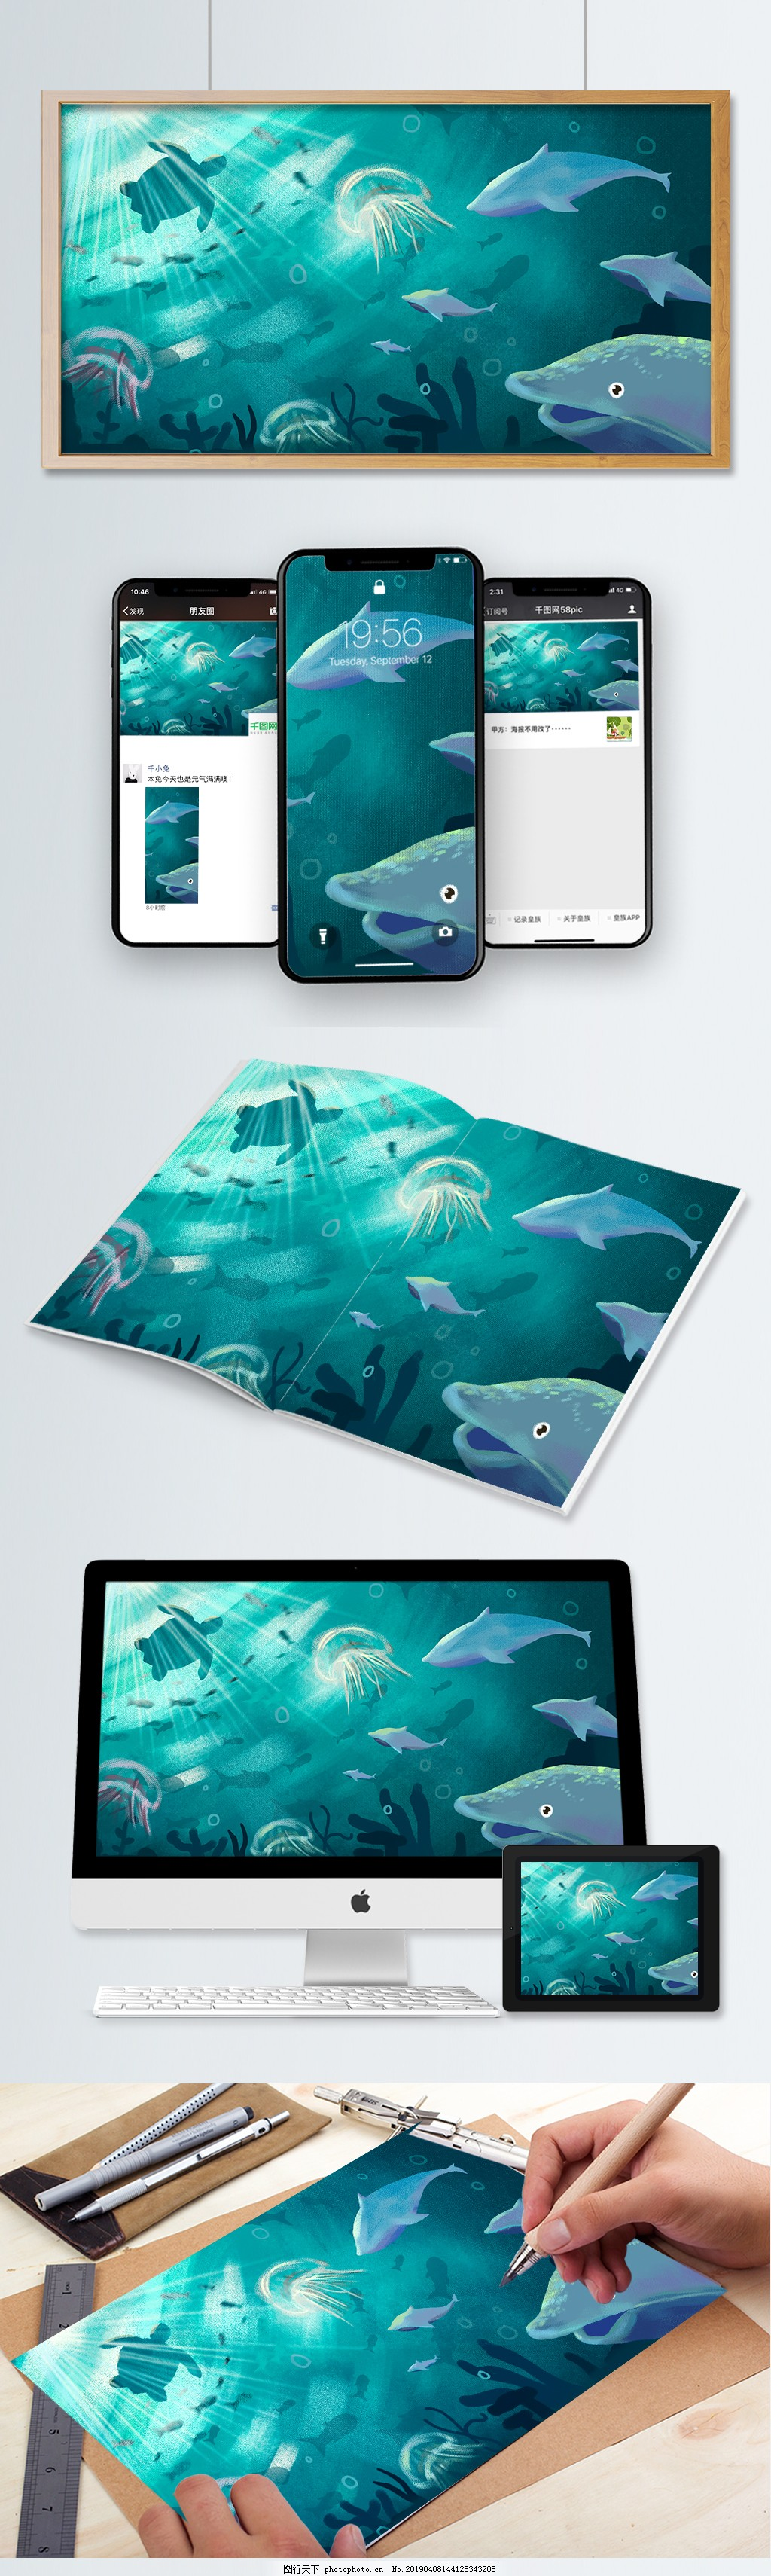 原创插画海底海洋生物海豚,元素,配图,文章配图,微博配图,壁纸